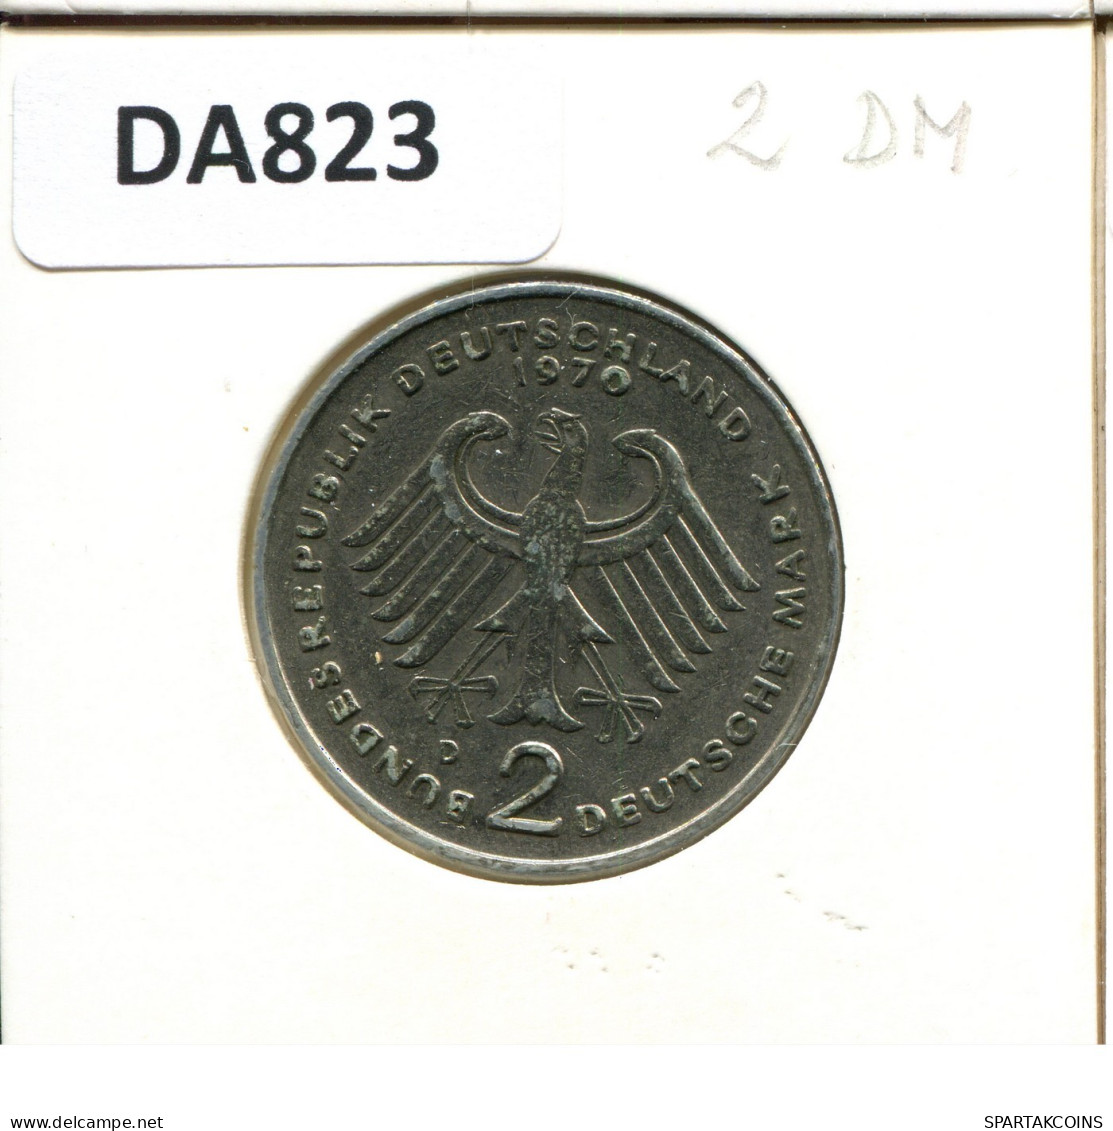 2 DM 1970 D T. HEUSS BRD ALEMANIA Moneda GERMANY #DA823.E.A - 2 Mark